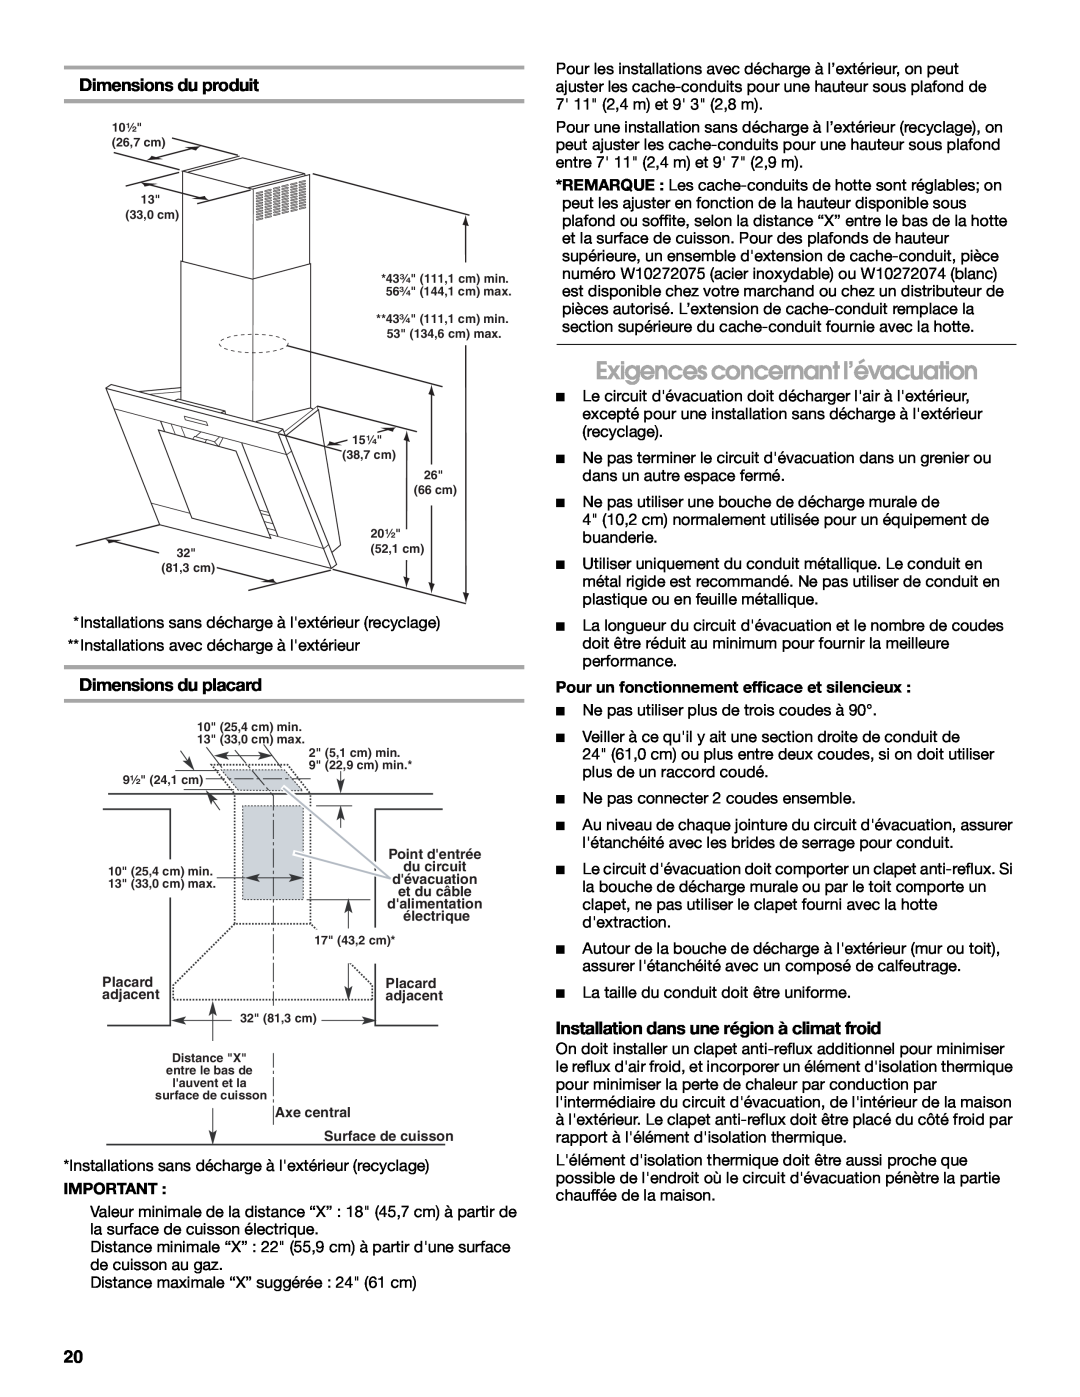 Jenn-Air LI3URB/W10274314C Exigences concernant l’évacuation, Dimensions du produit, Dimensions du placard 